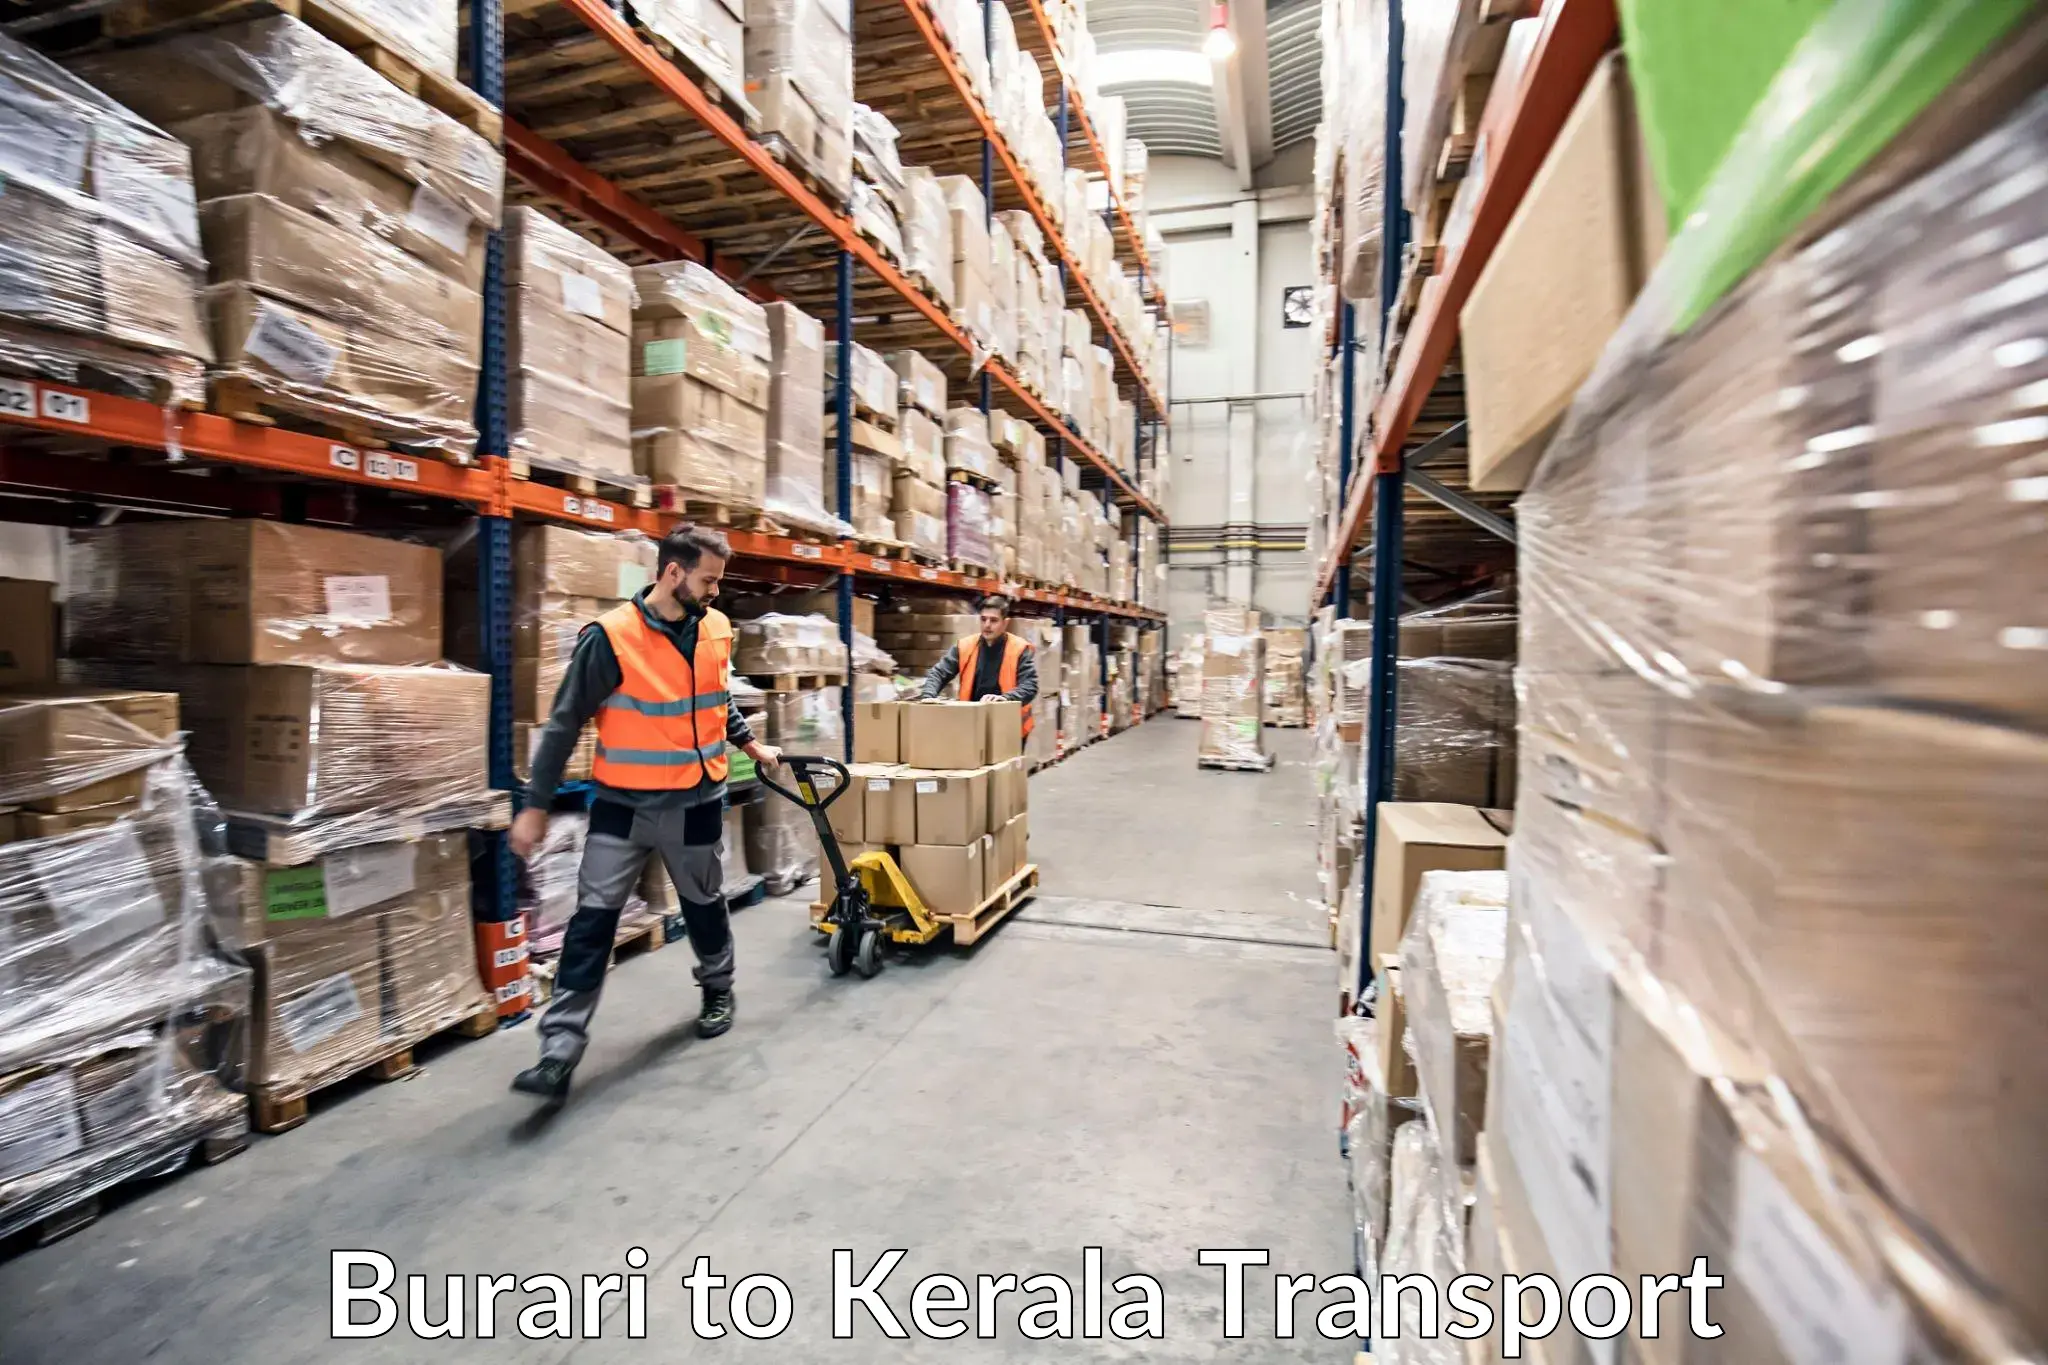 Nearest transport service Burari to Kerala University Thiruvananthapuram